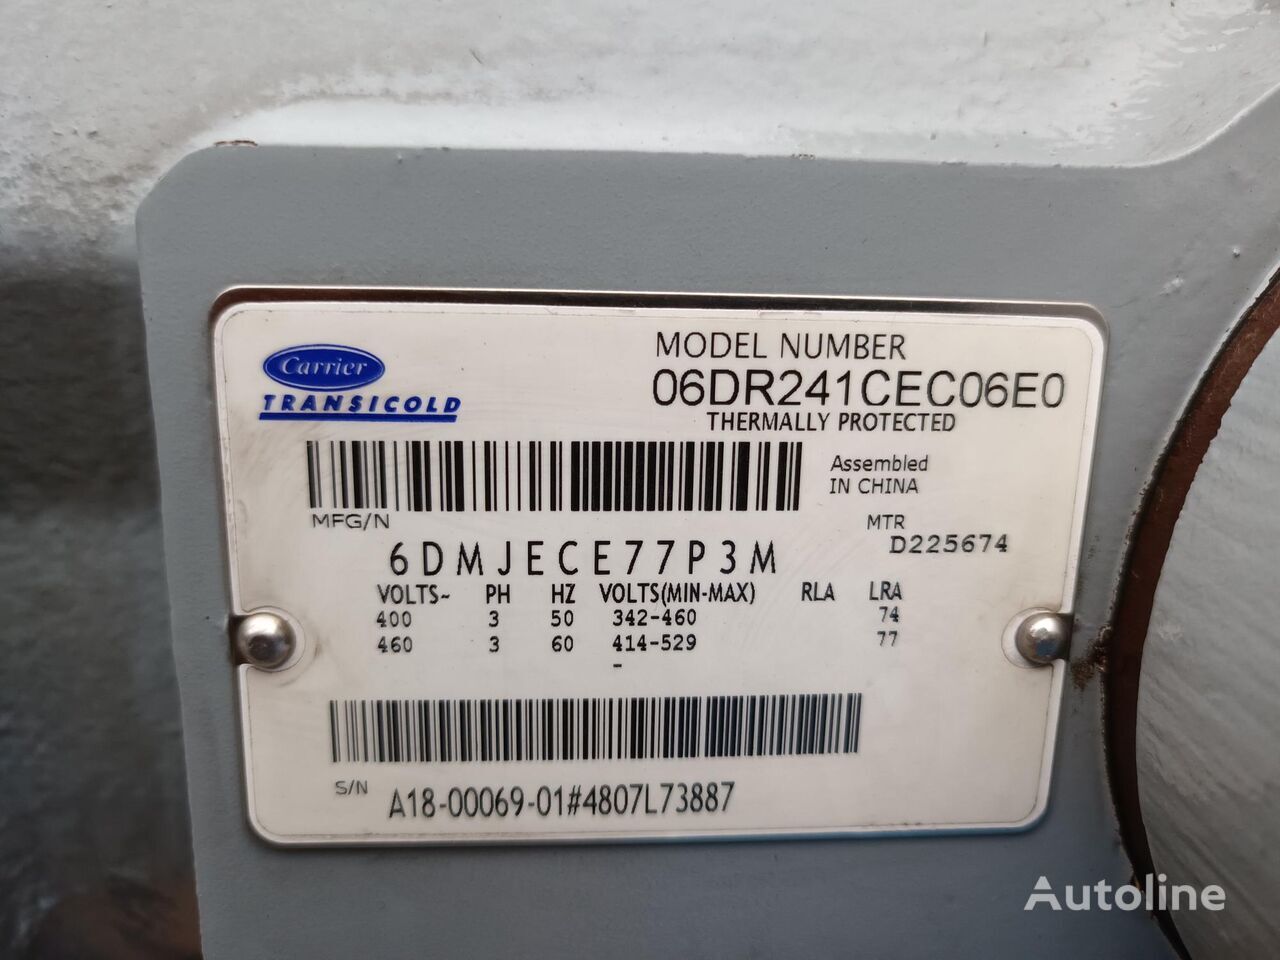 Compressore per Camion SUPRA 850 MT MULTITEMPERATURA (18-00069-01): foto 3